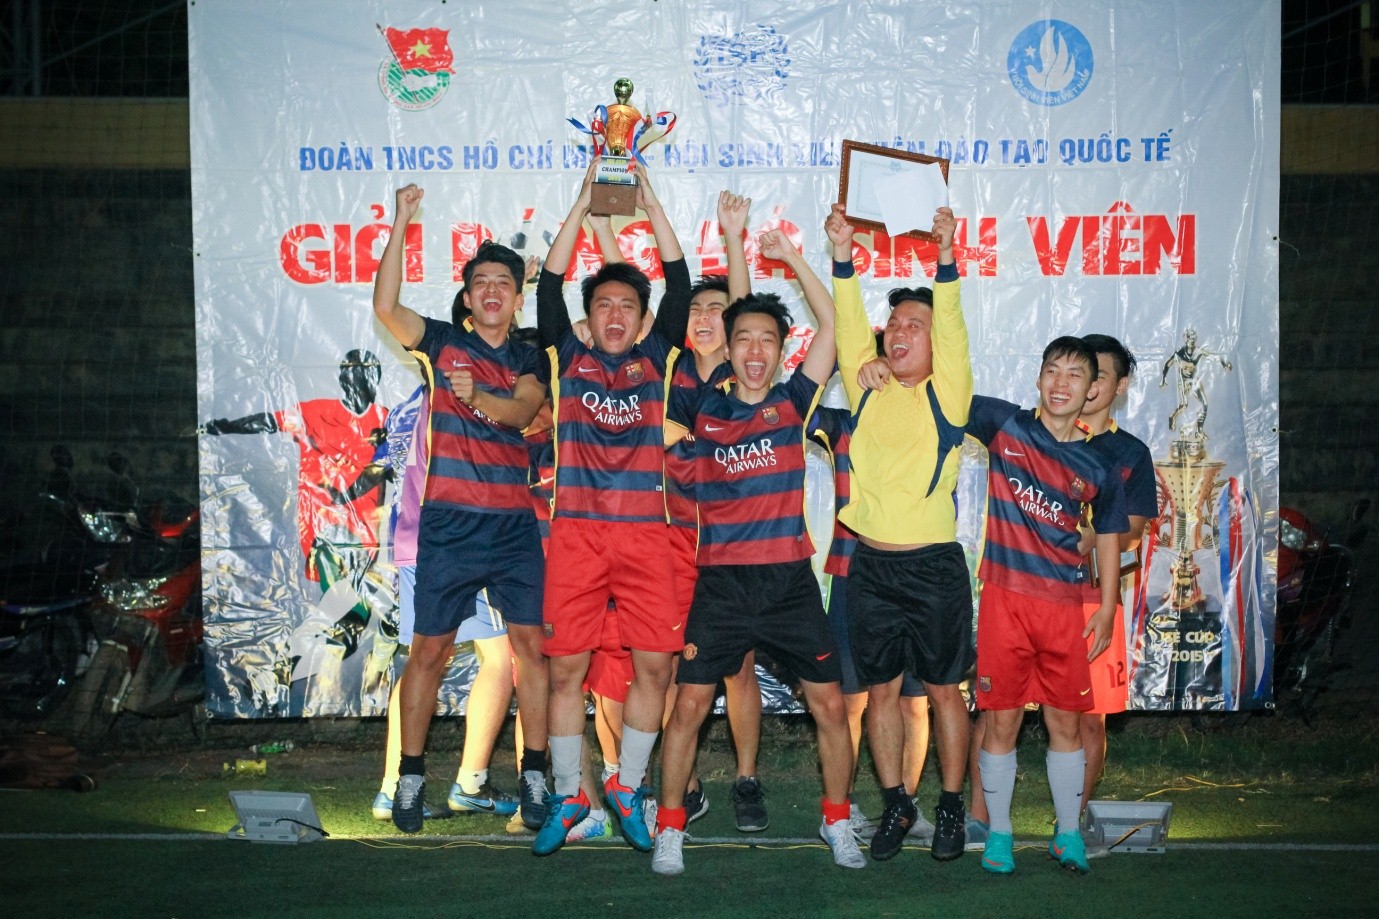 Tổng kết Giải bóng đá sinh viên ISE CUP 2015 : Giải đấu đầy kịch tính 